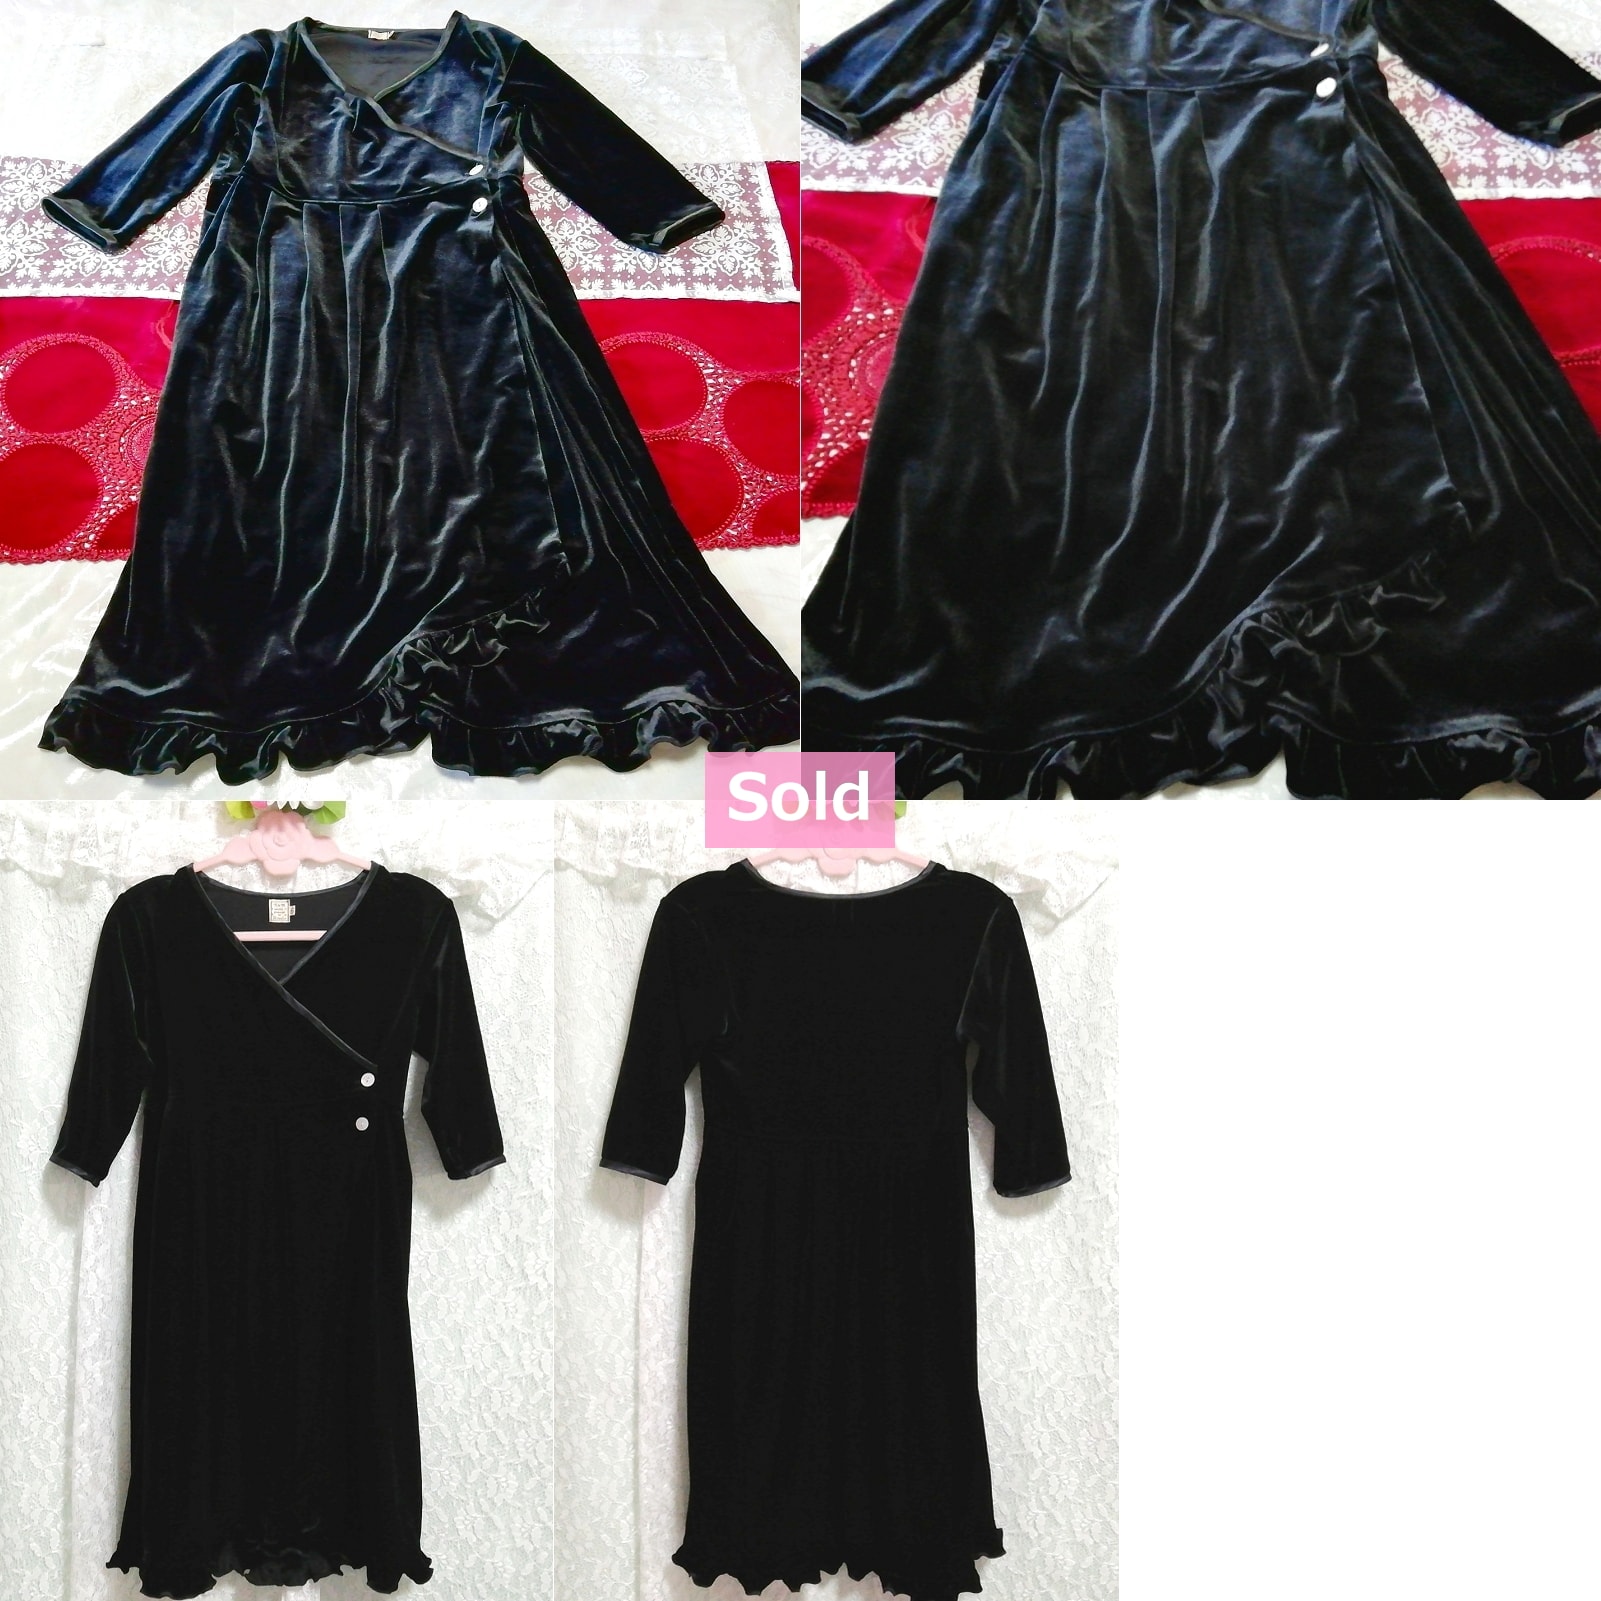 블랙 벨루어 하오리 긴소매 롱 튜닉 네글리제 나이트가운 나이트웨어 드레스, 튜닉, 긴팔, m 사이즈